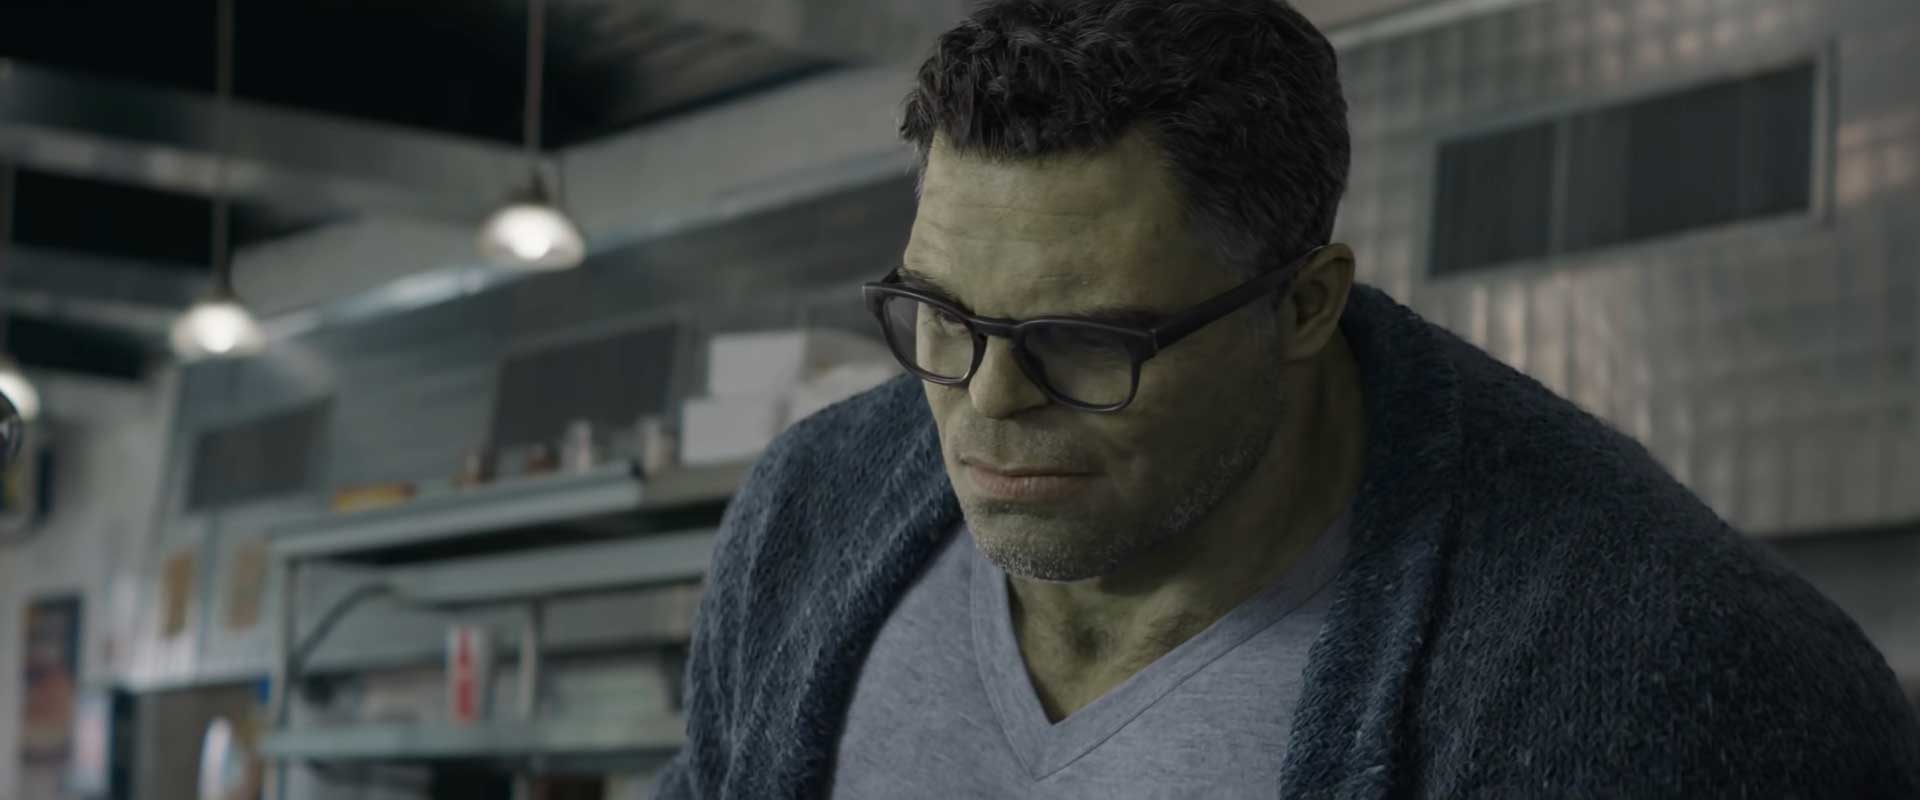 Avengers-Endgame-Clip-Scene-Hulk-Out.jpg